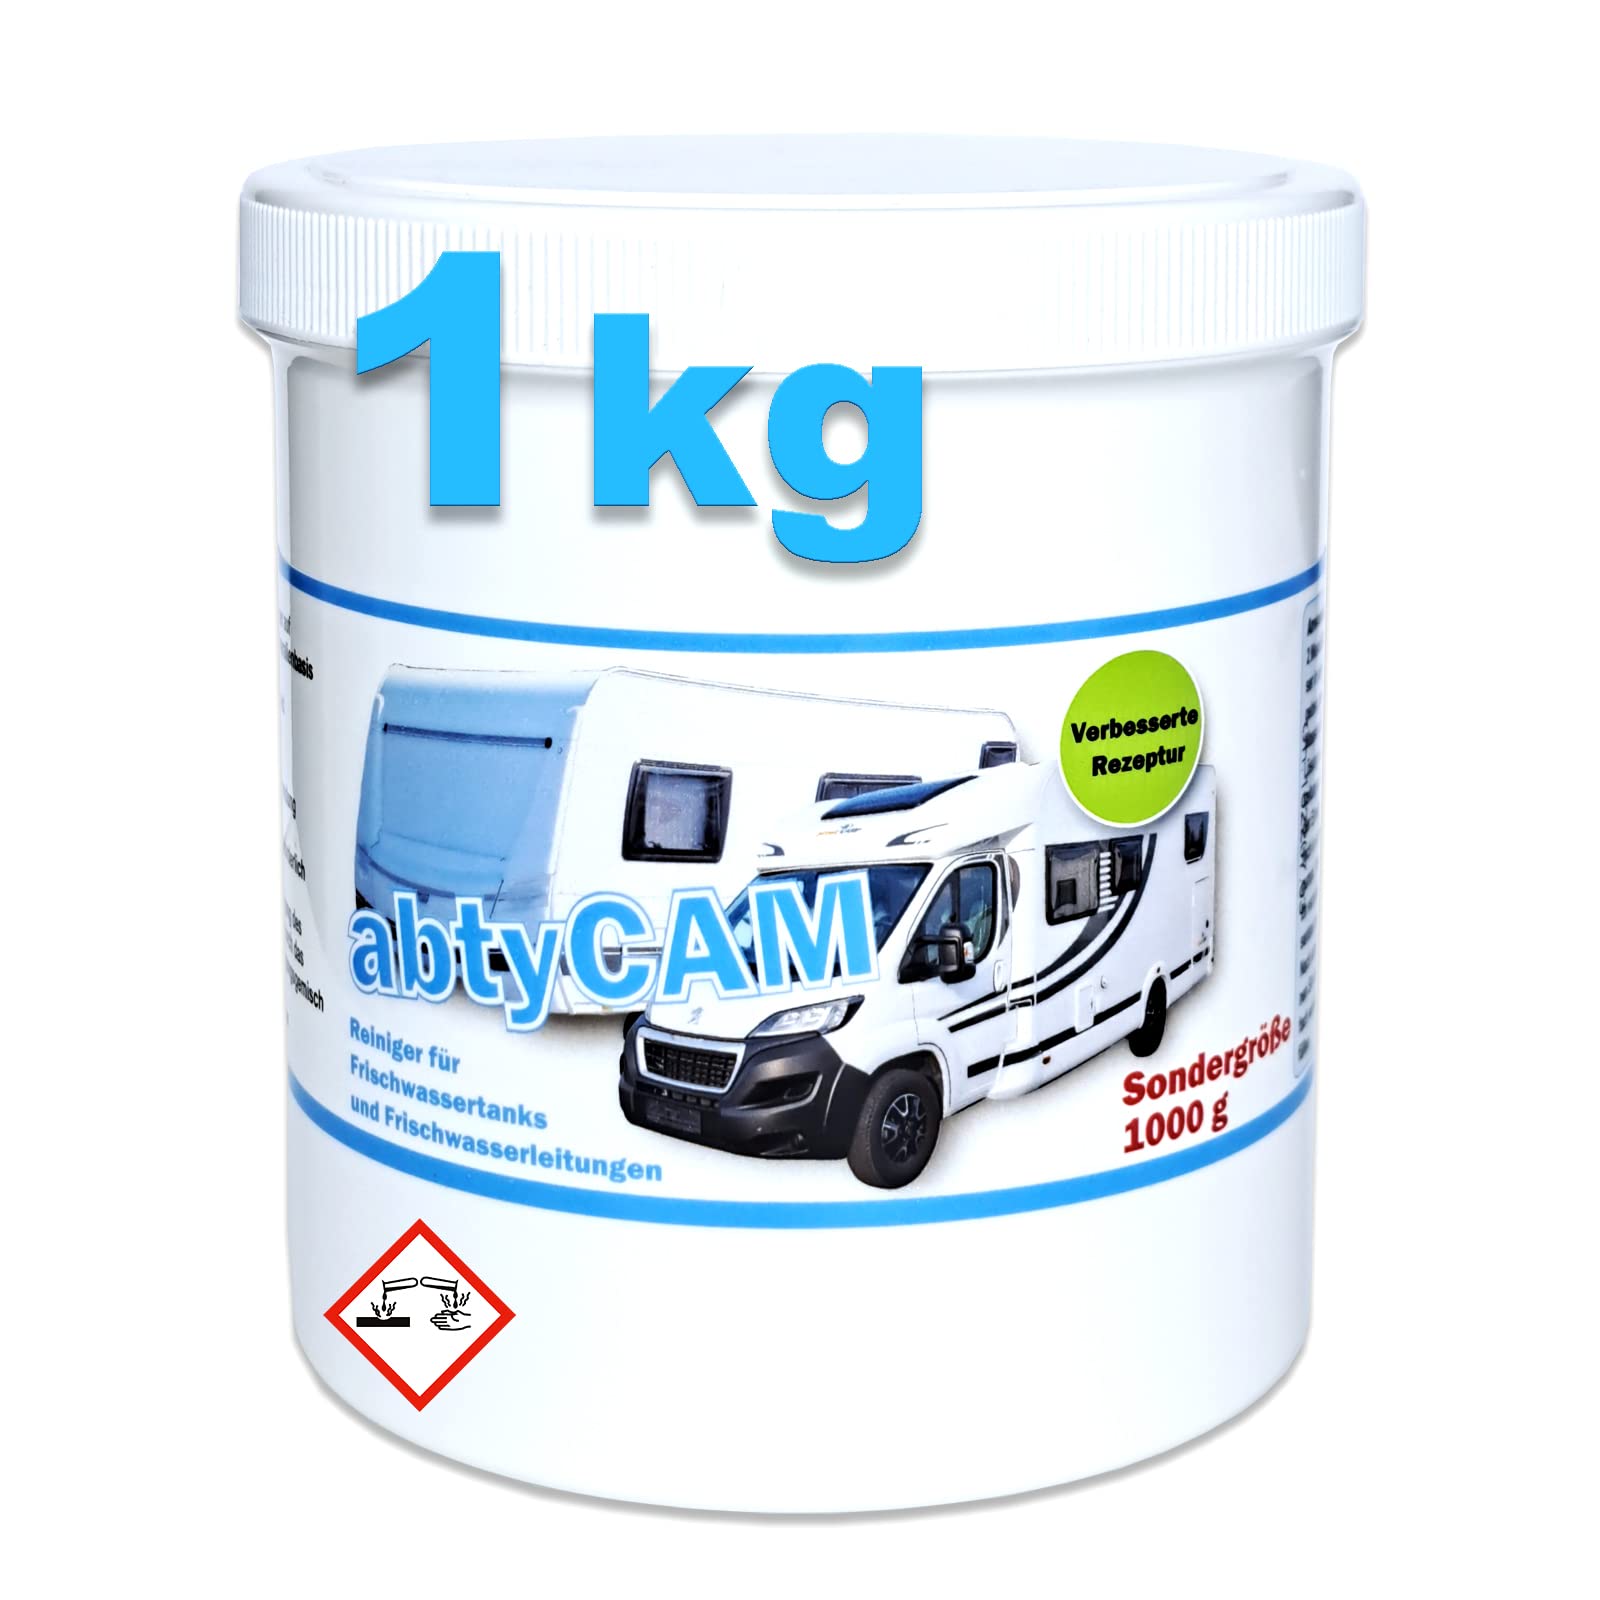 Wassertank Reiniger Wohnmobil 1000g Frisch-Wasser Tankreiniger abtyCAM für Wohnwagen Boot 28,90€/1kg von Cago